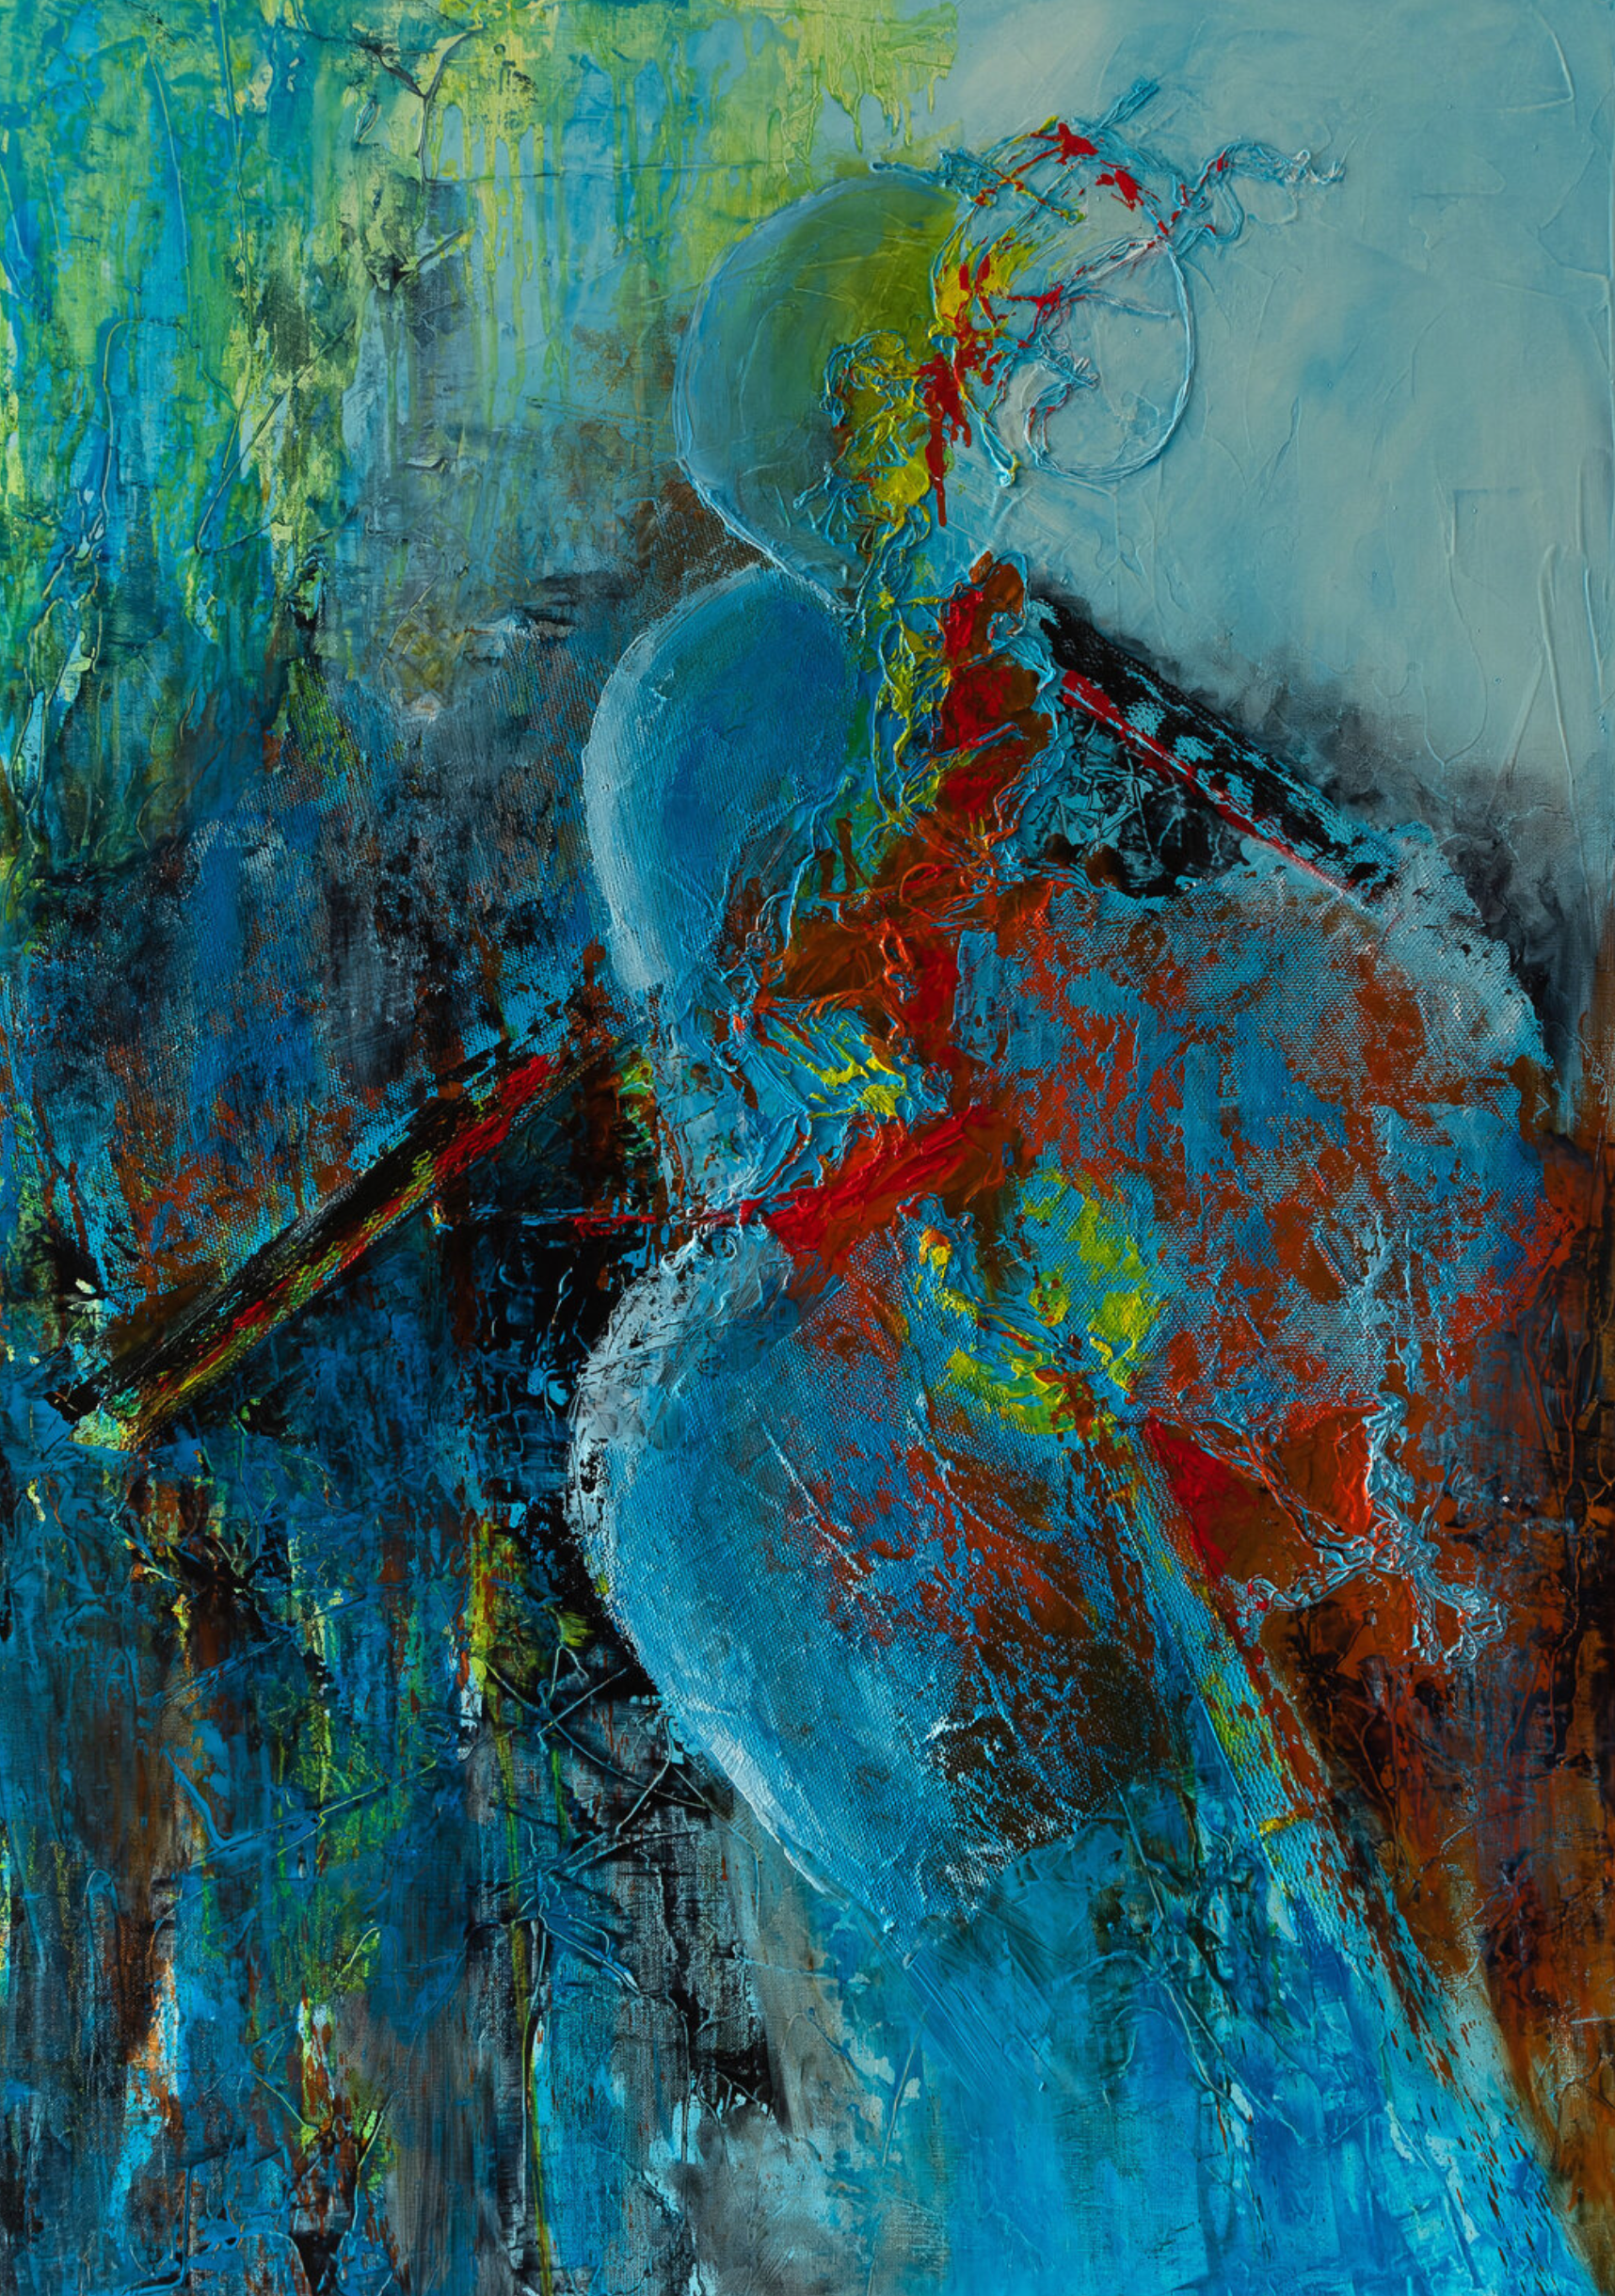 弗朗索瓦丝-杜古德-卡普特的 "萨洛梅 "抽象画显示 在蓝色和橙色运动的中心，一个模糊的女性轮廓，几乎没有轮廓，玩弄形状和材料，给抽象组合带来优雅和感性的触摸